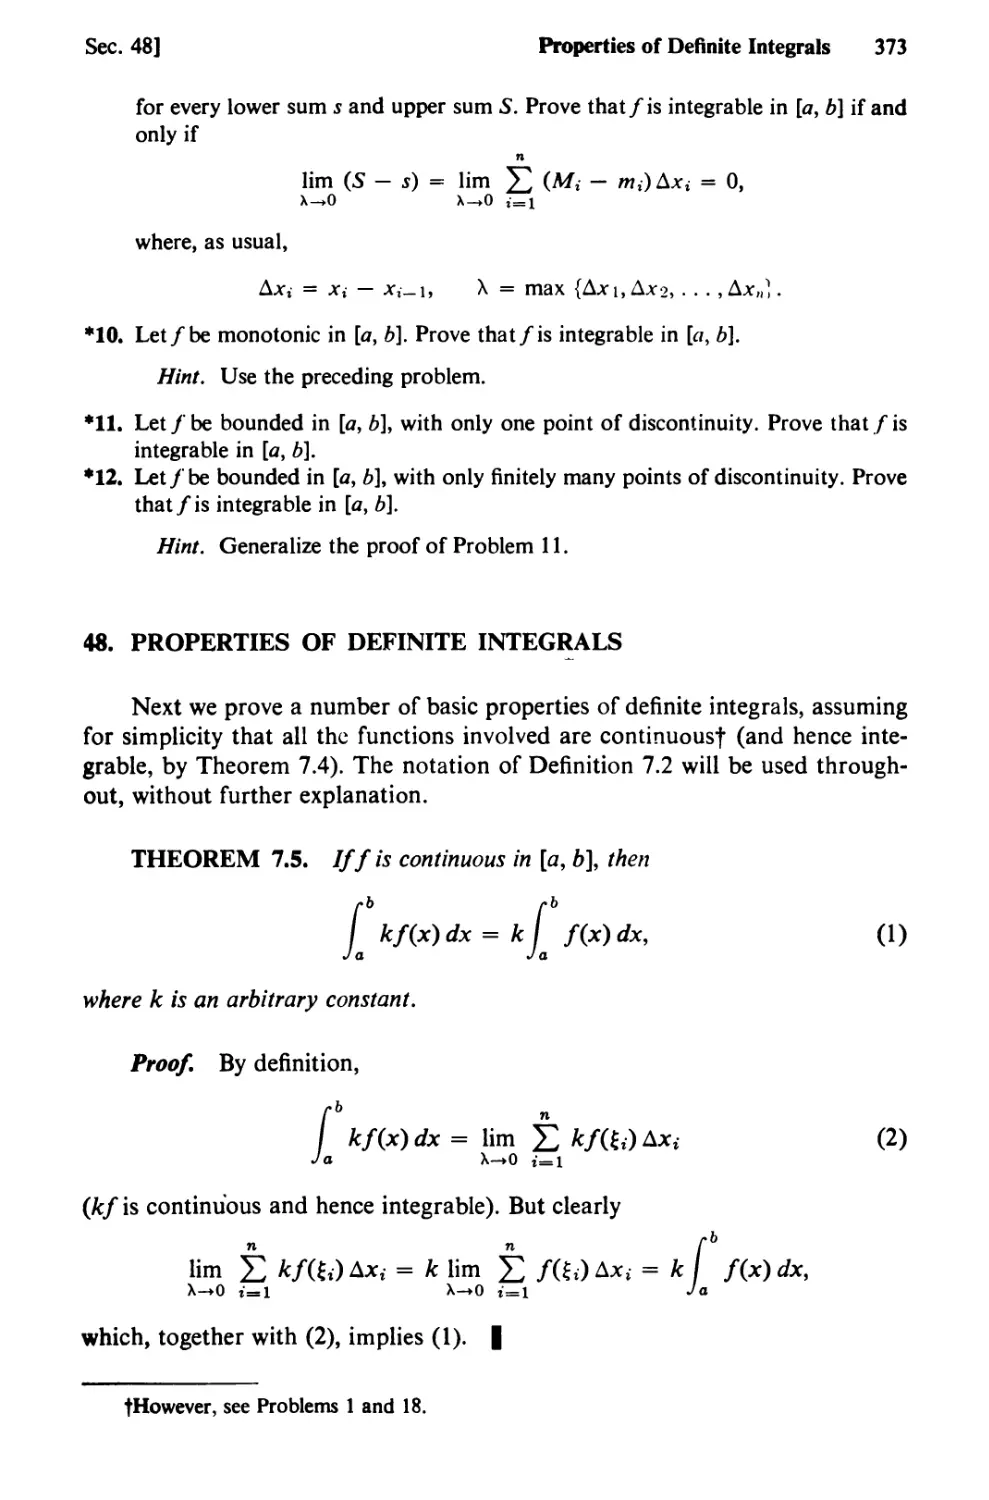 48. Properties of Definite Integrals